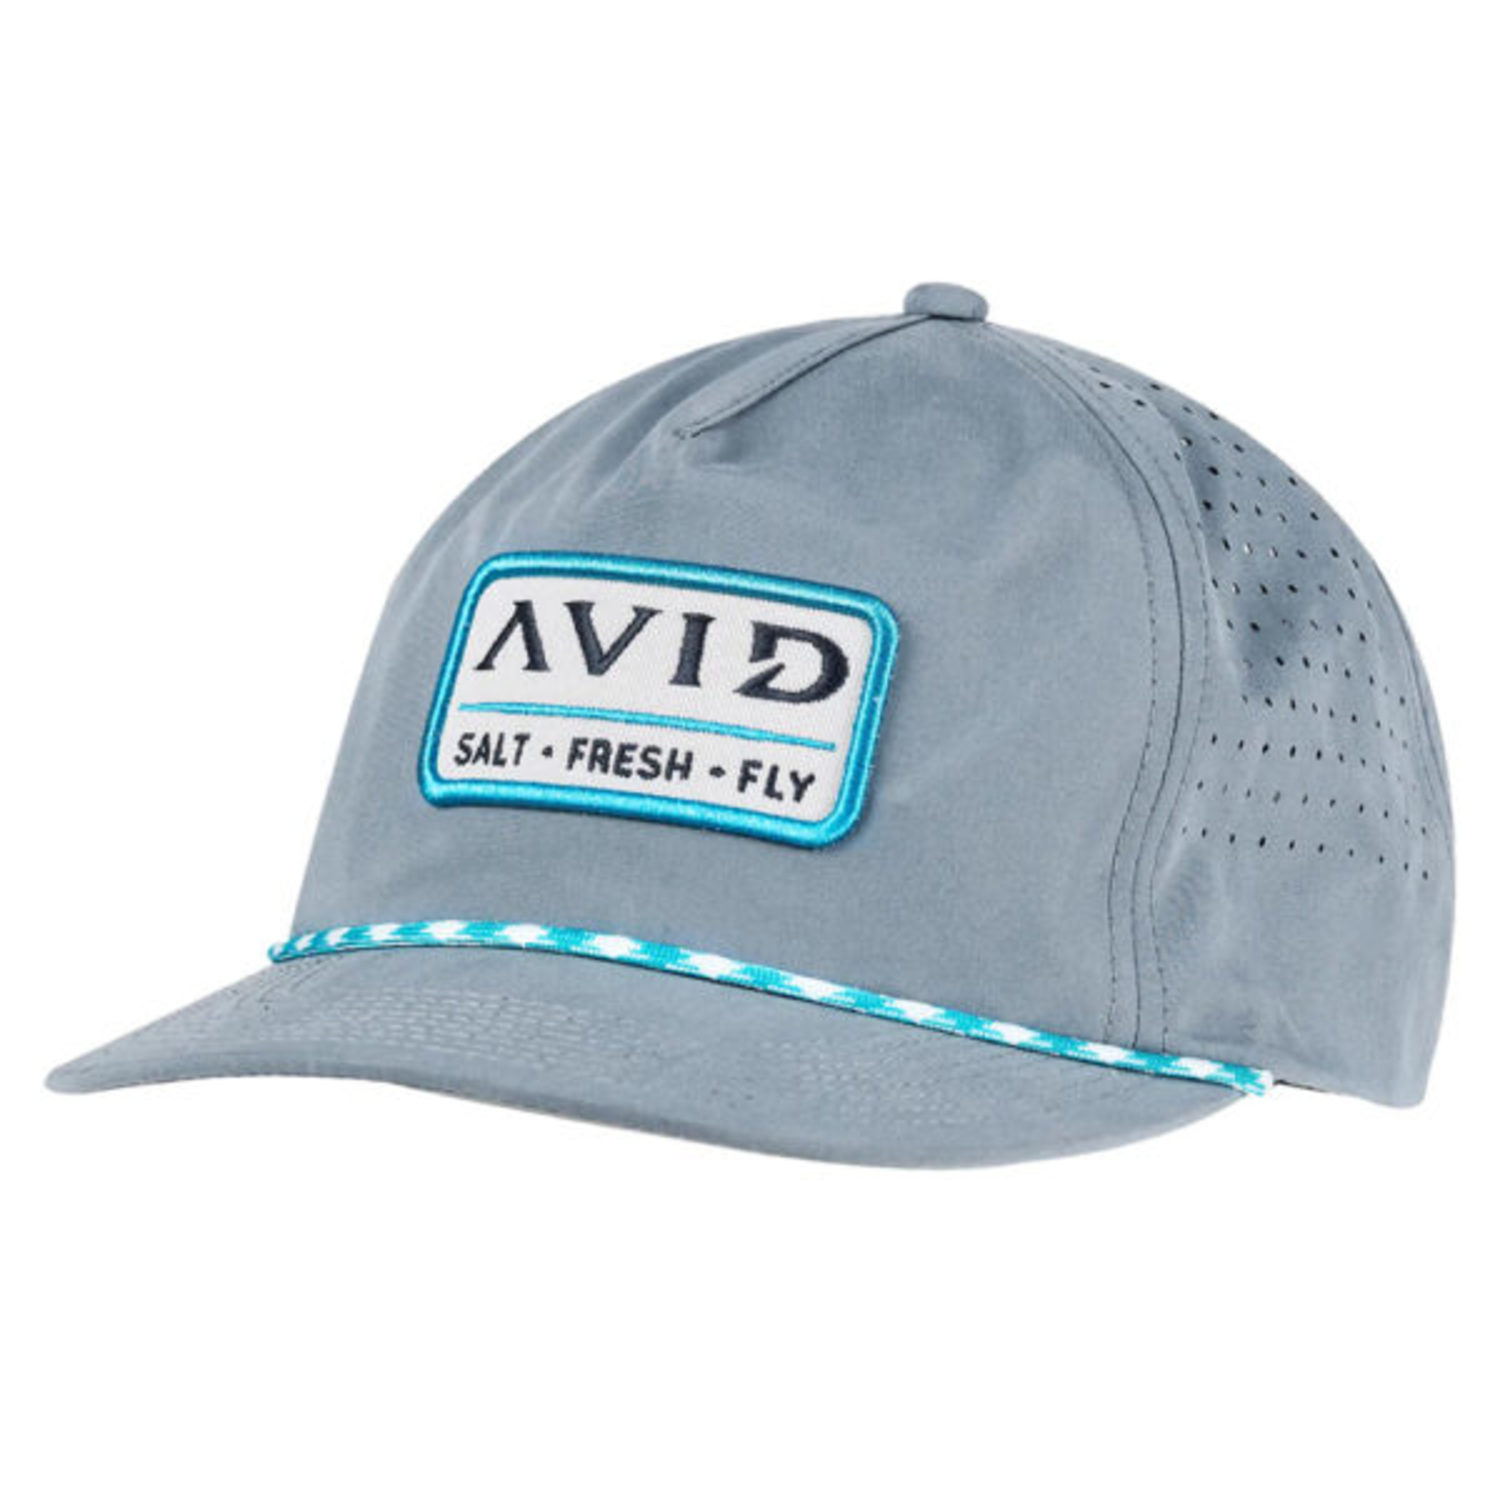 Avid Hats, Avid Caps, Beanie, Snapbacks